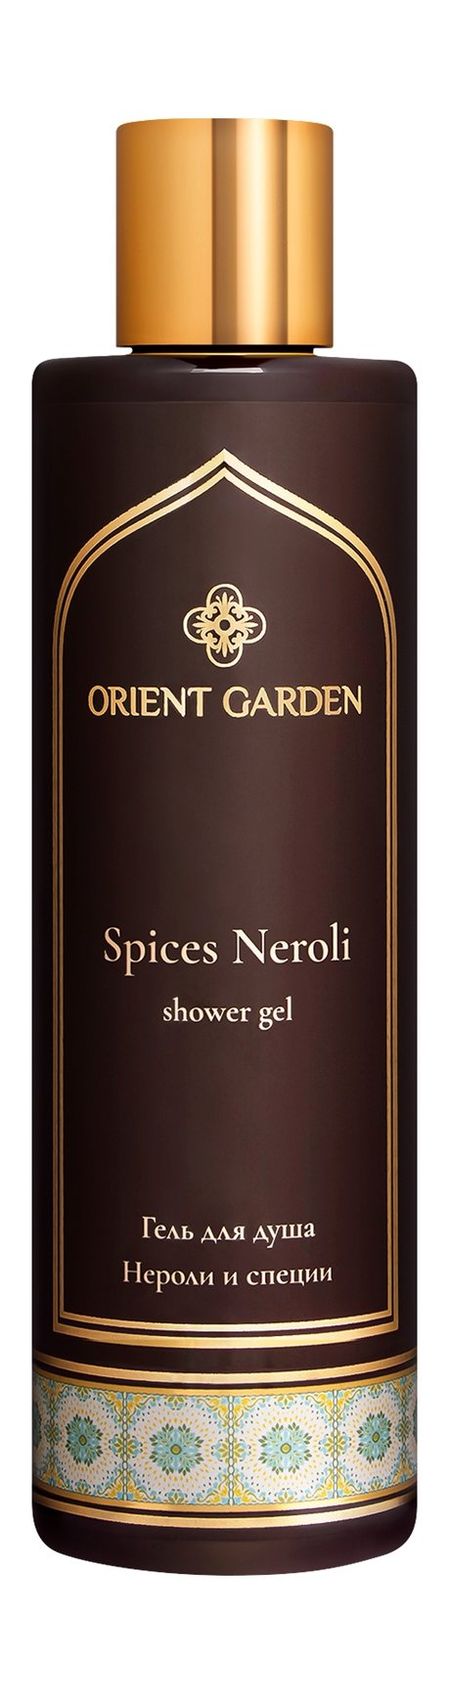 orient garden spices neroli shower gel